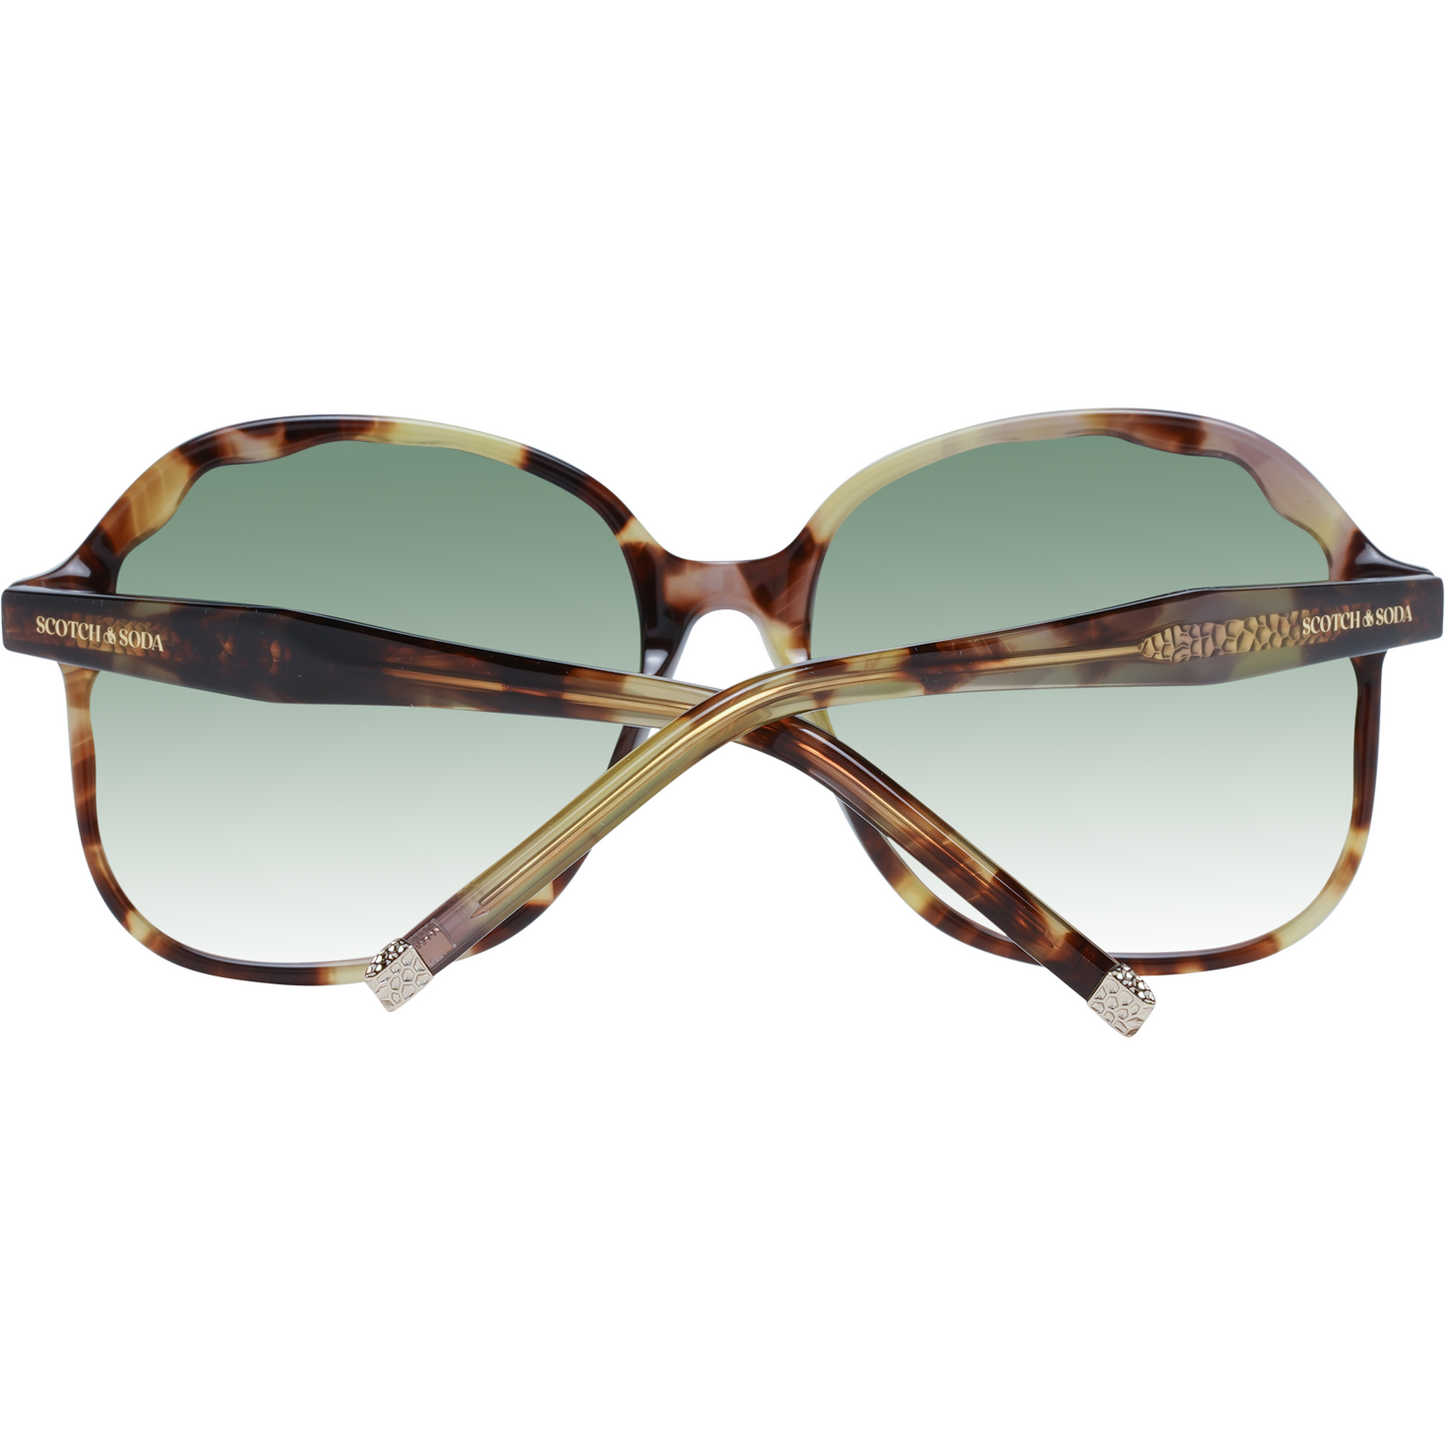 Scotch & Soda Chic Butterfly Gradient Sunglasses multicolor-women-sunglasses-2